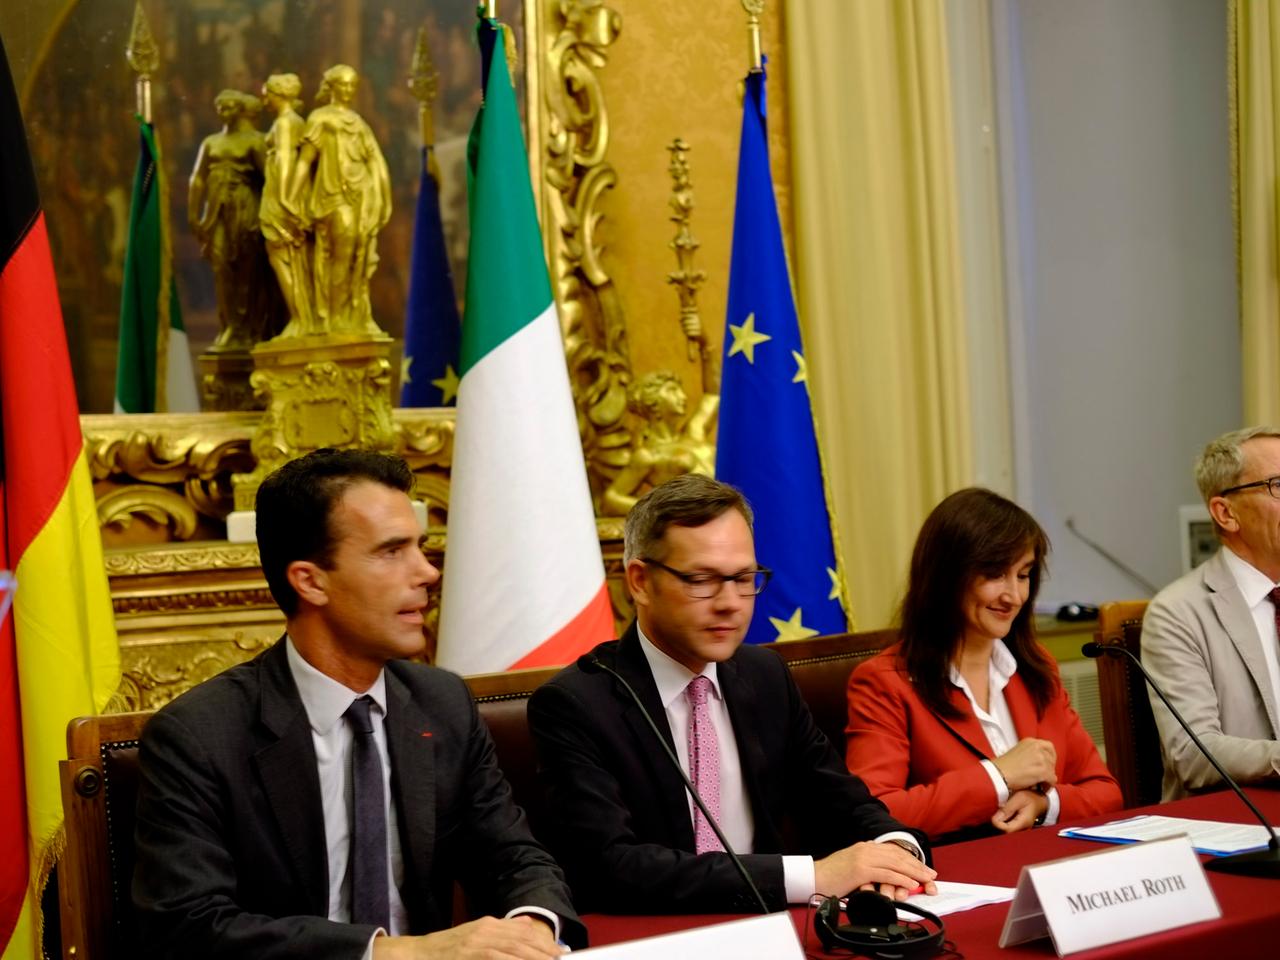 Laura Garavini (rechts) bei einer Konferenz im italienischen Parlament. Michael Roth, Staatsminister im Auswärtigen Amt (Mitte), Sandro Gozi, Unterstaatssekretär, verantwortlich für Europapolitik (links).